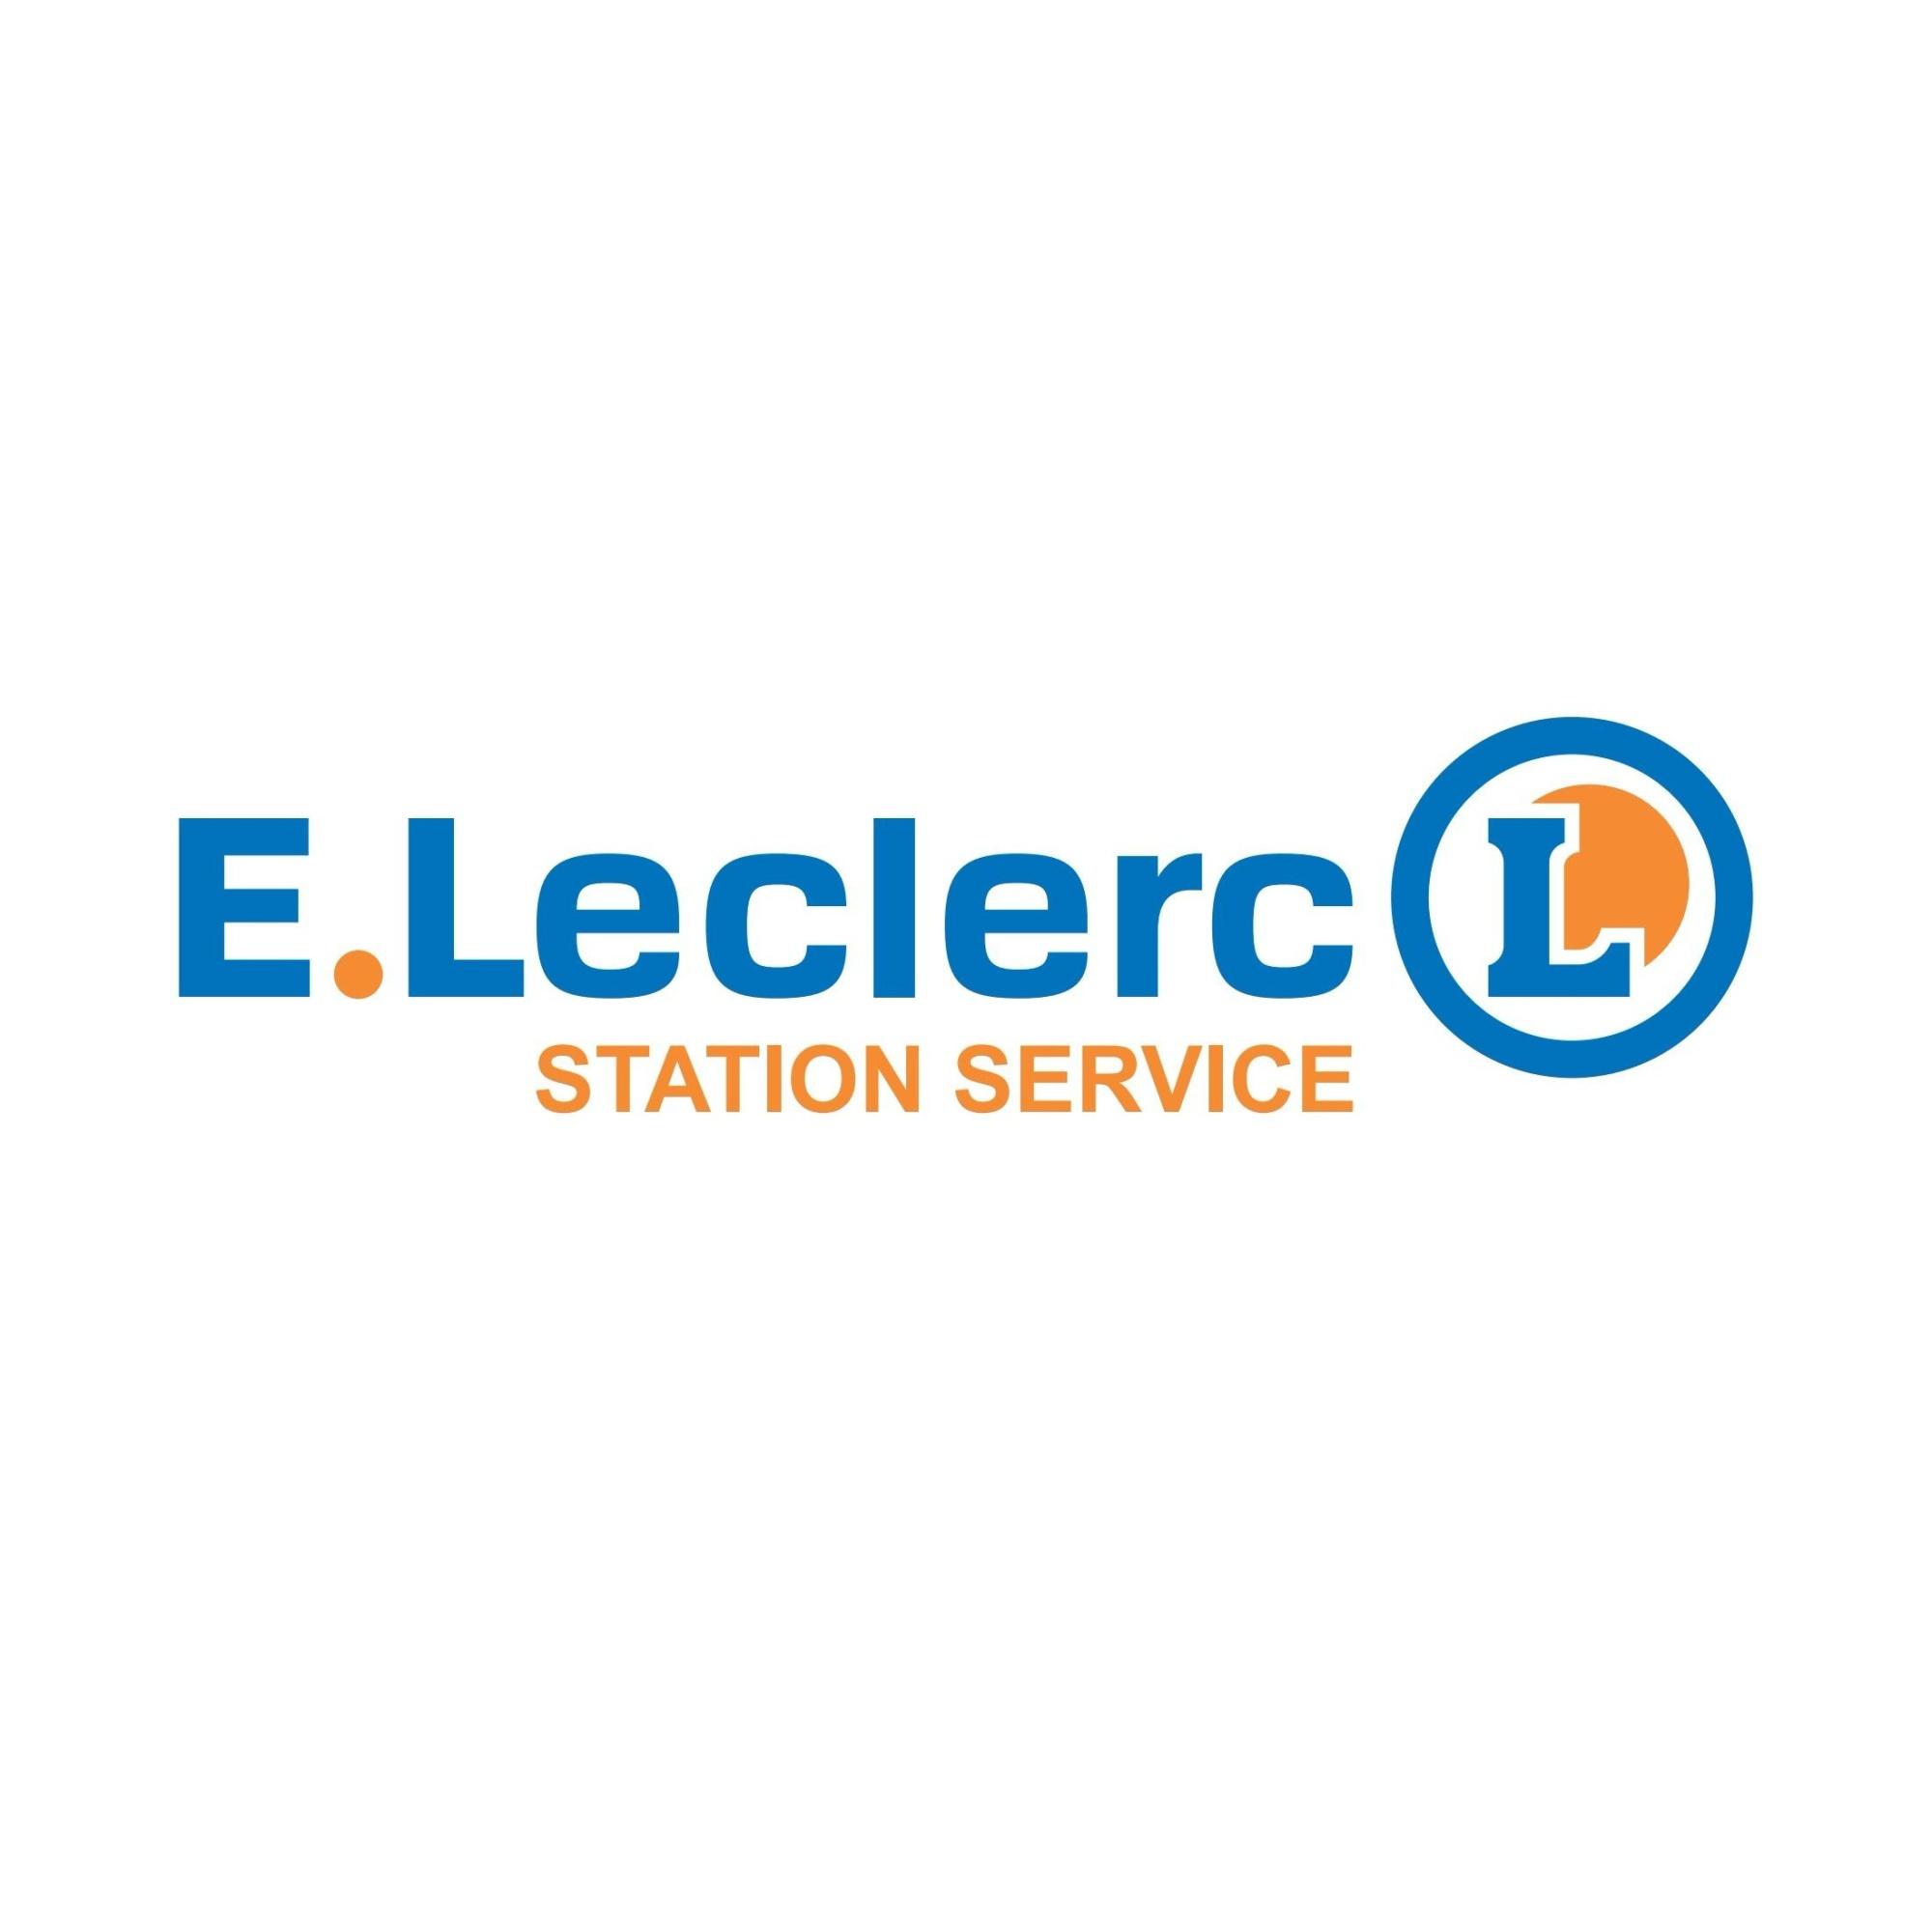 E.leclerc Station Service Rennes